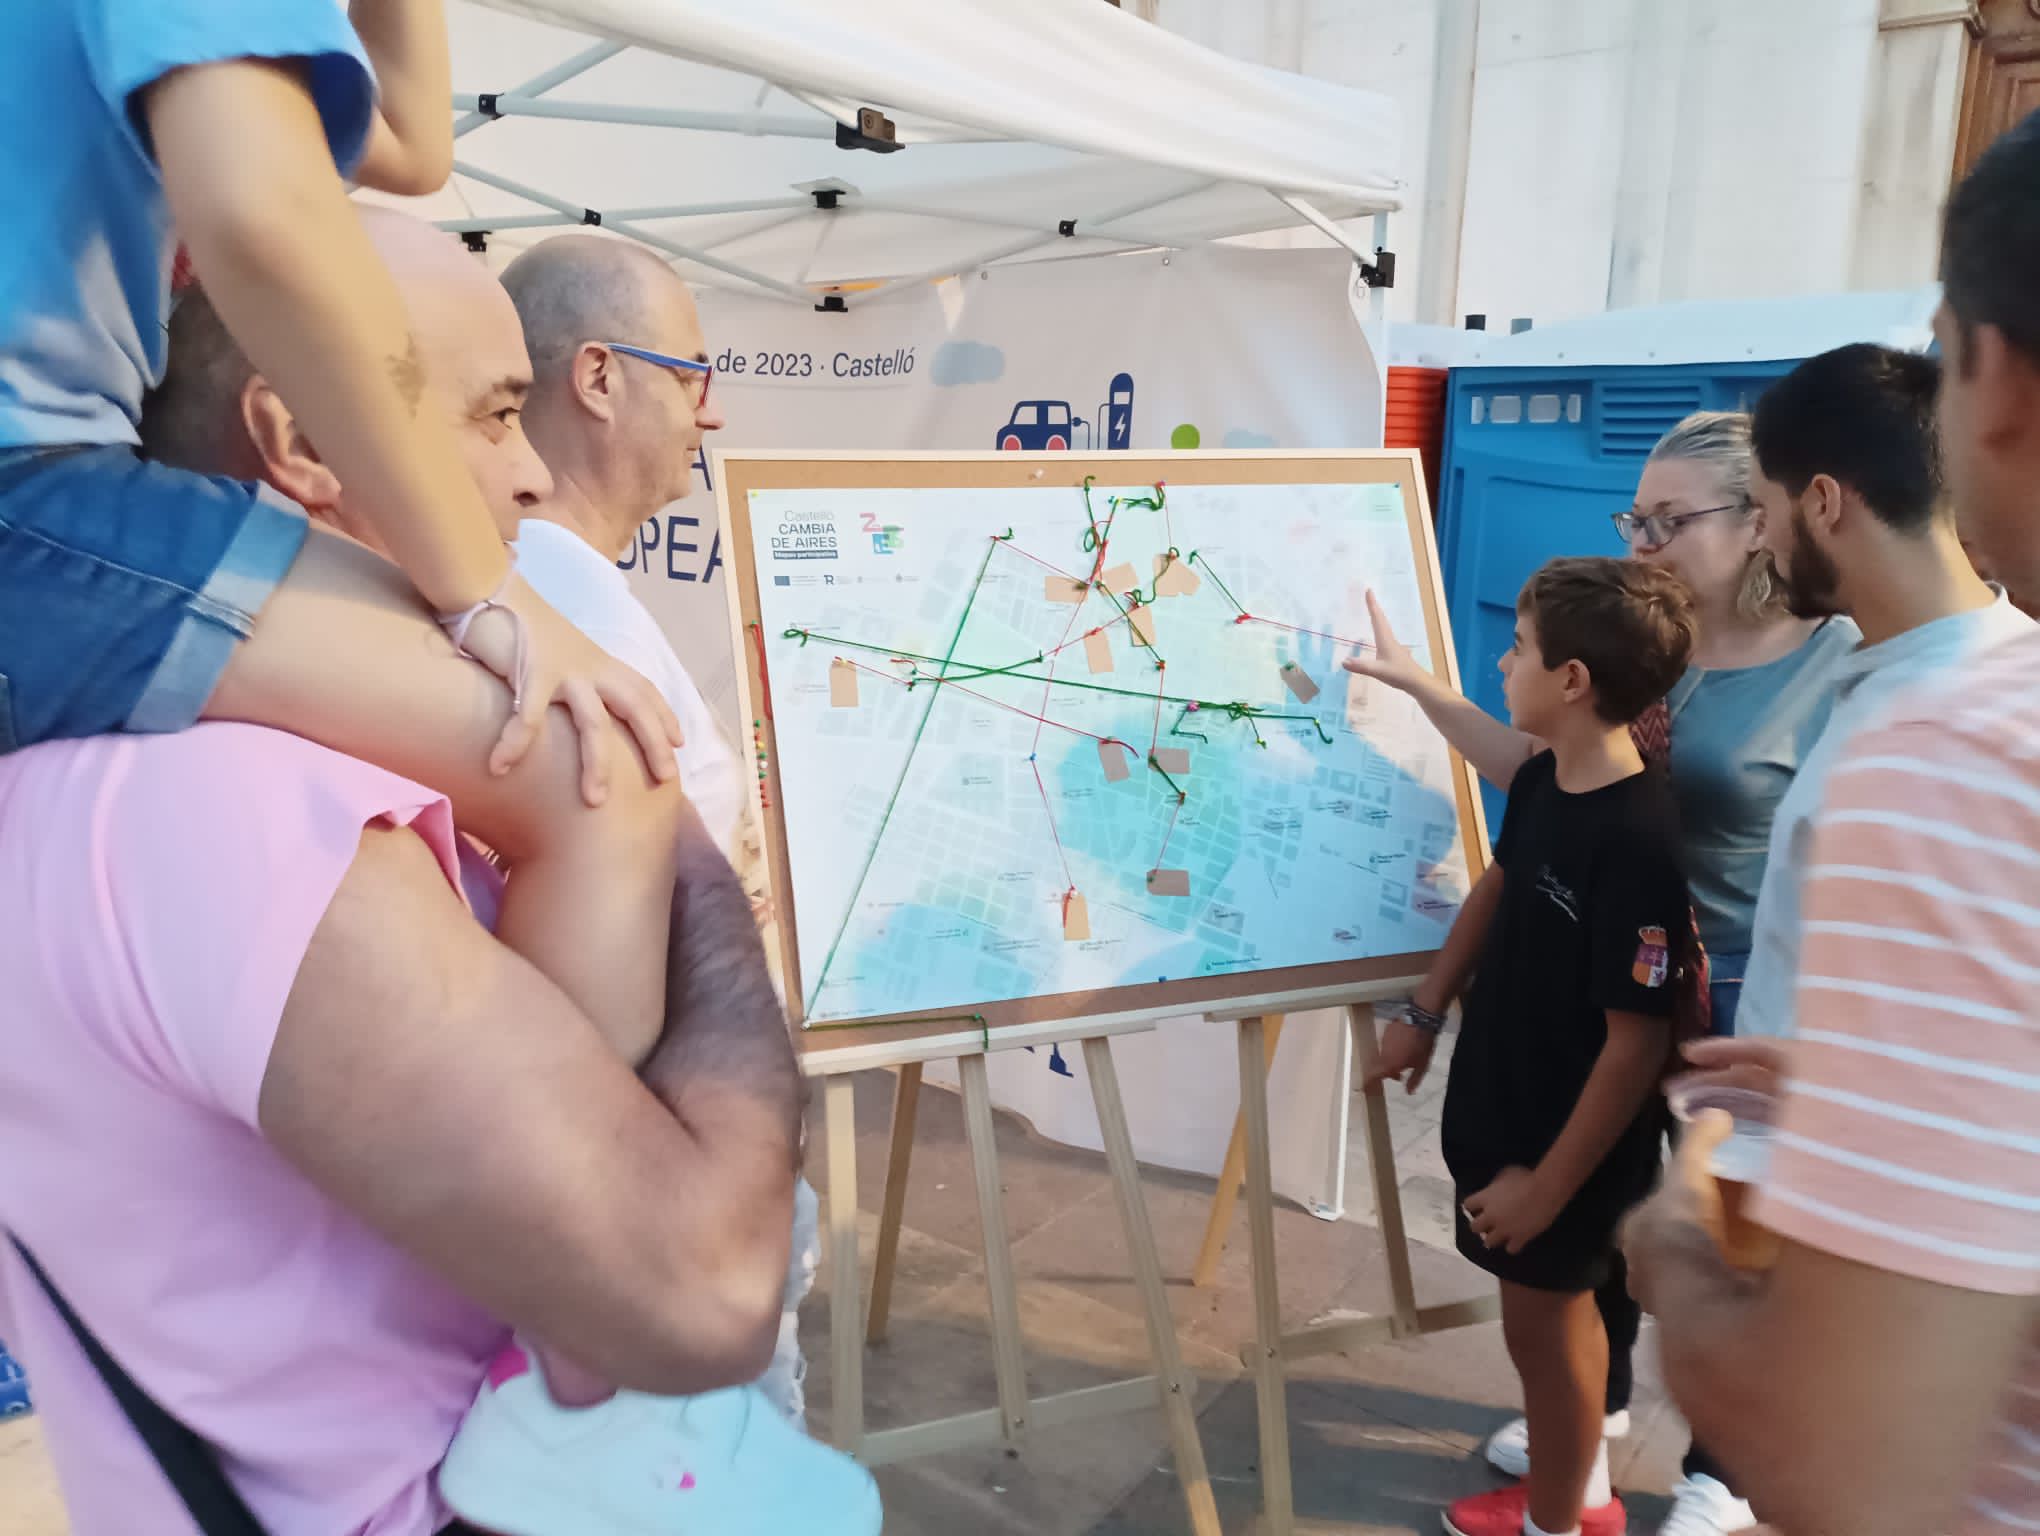 Castelló organitza un ‘Mapeo Participativo’ per a concienciar sobre la mobilitat sostenible